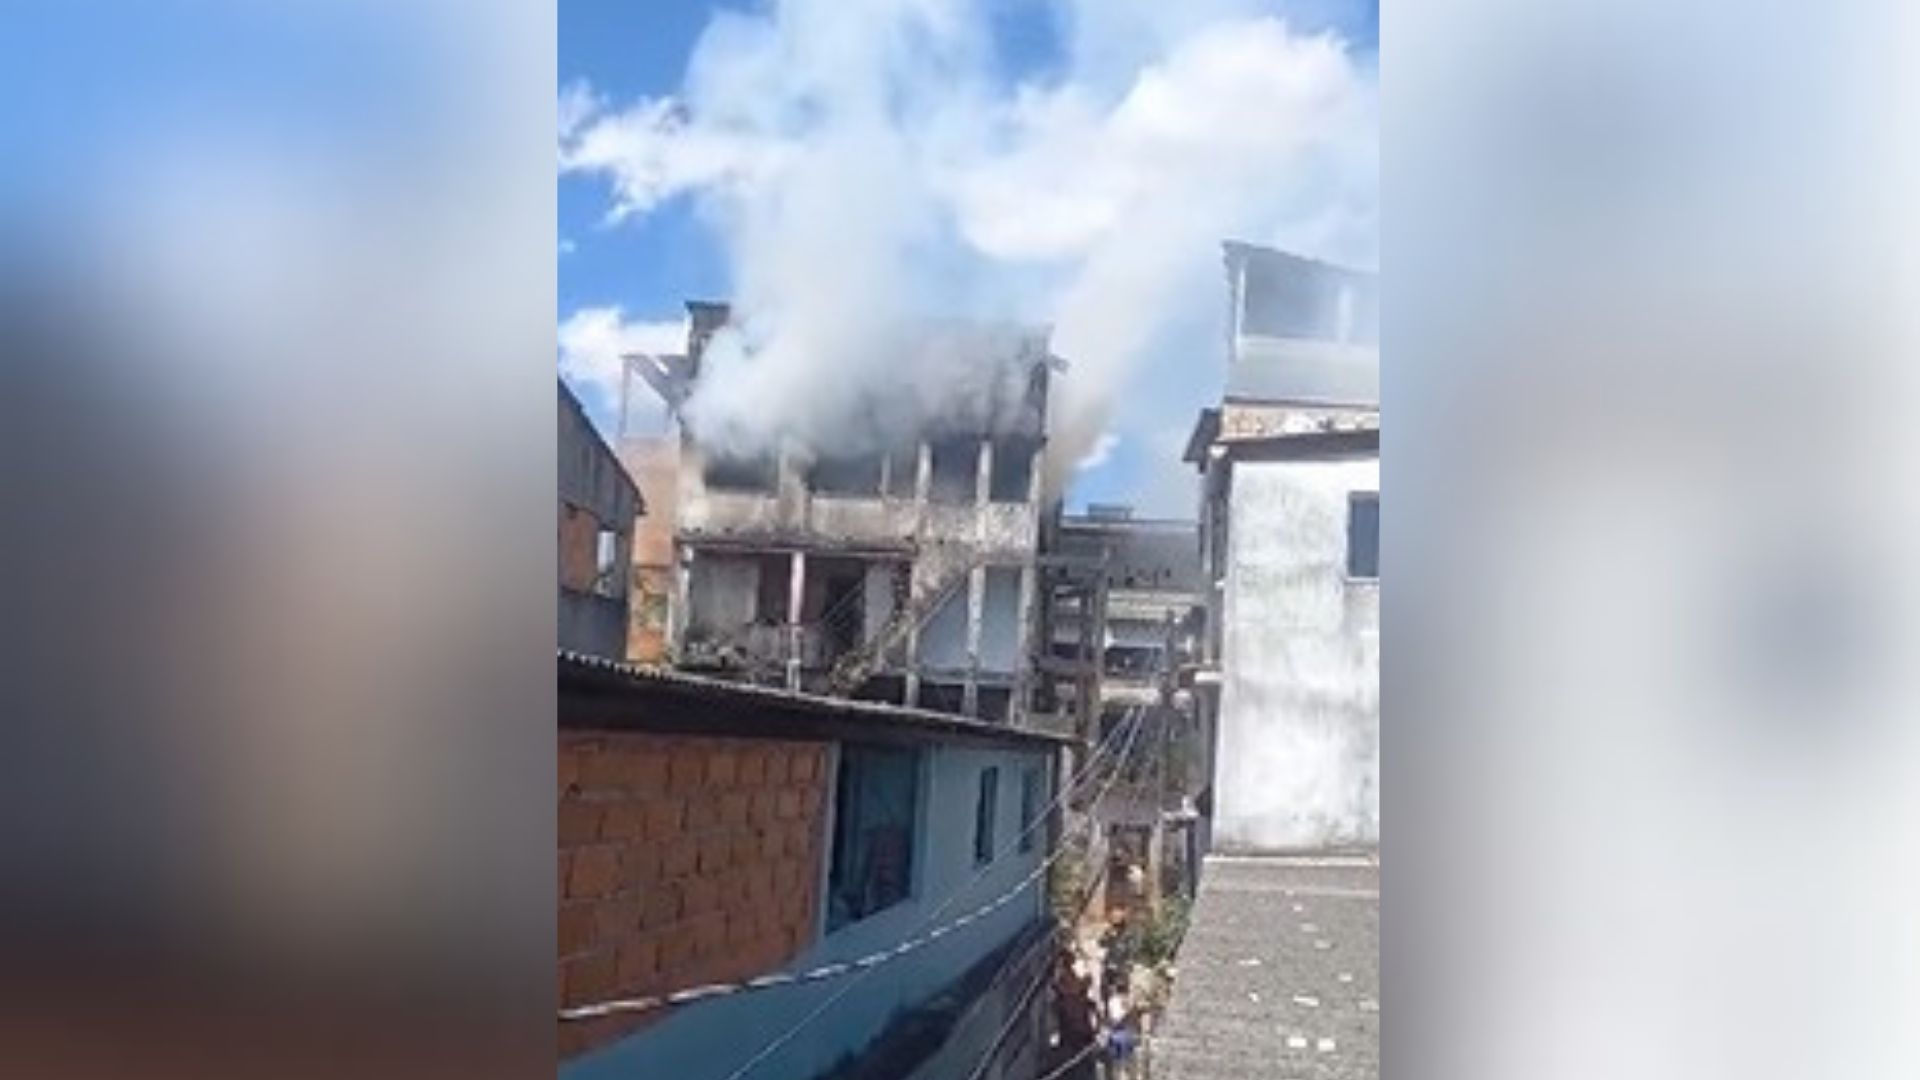 Segundo o Corpo de Bombeiros, a equipe foi acionada por volta das 13h para combater o fogo na residência, que fica em Itararé